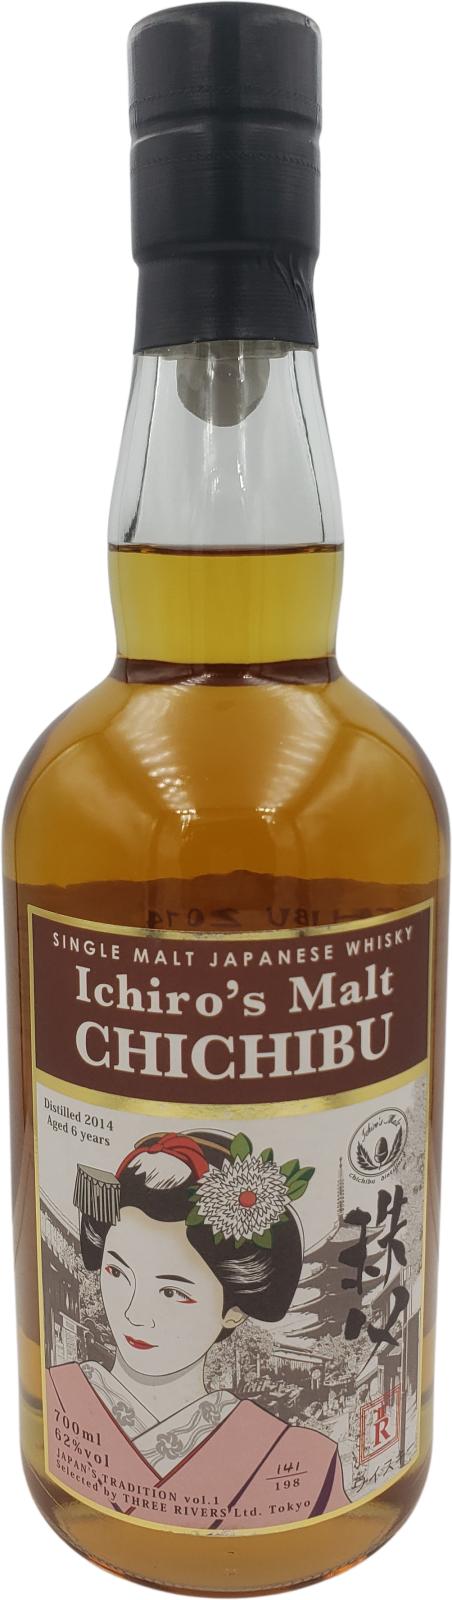 Chichibu 2014 1st Fill Bourbon Barrel #3392 Three Rivers Ltd. Tokyo 62% 700ml